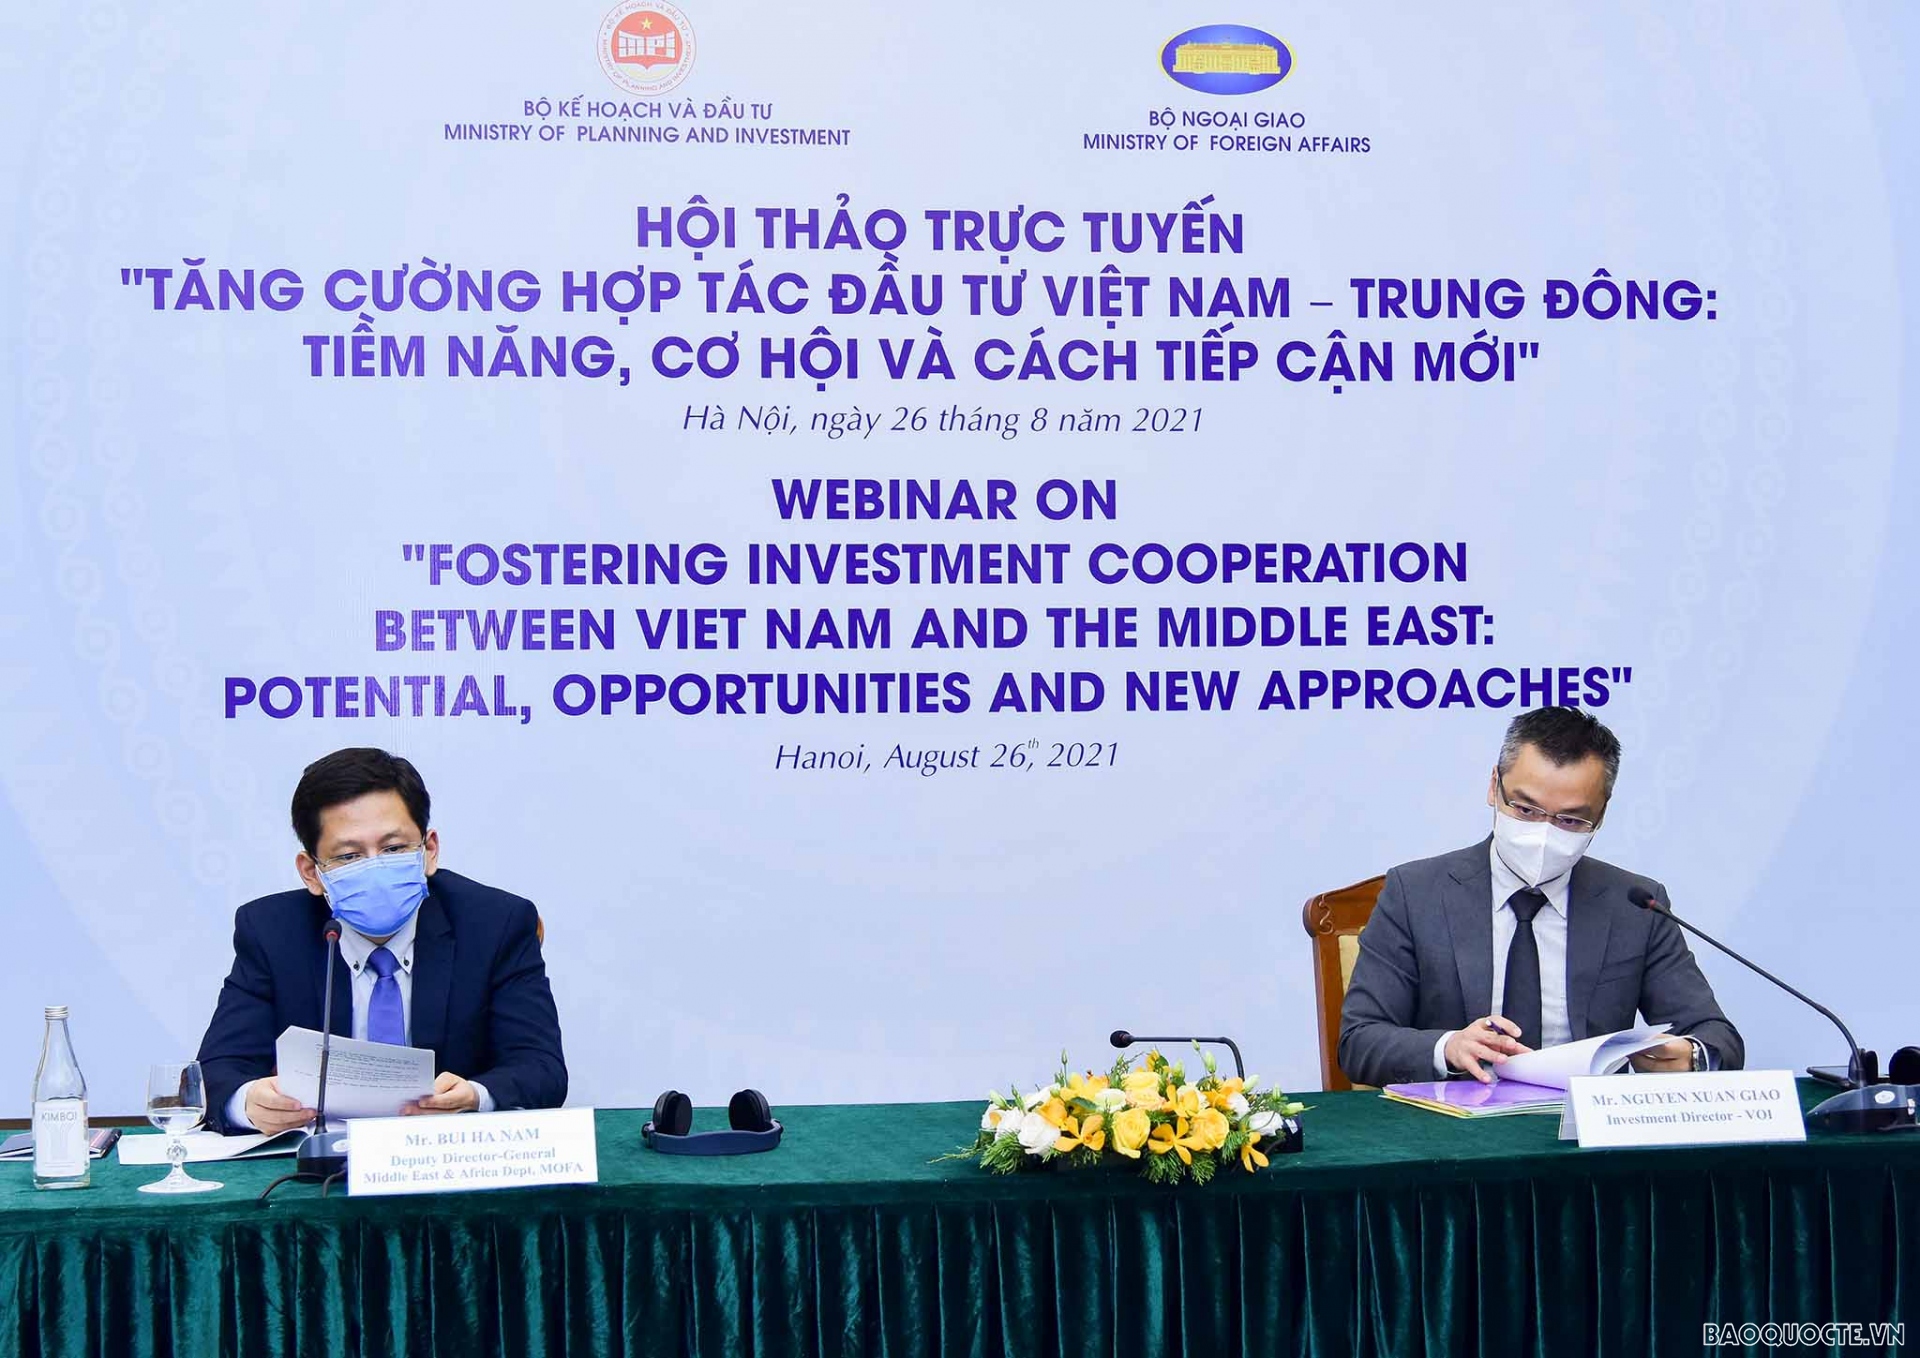 Một số diễn giả phát biểu tại phiên 2 “Cách tiếp cận mới trong tăng cường hợp tác đầu tư Việt Nam – Trung Đông”.